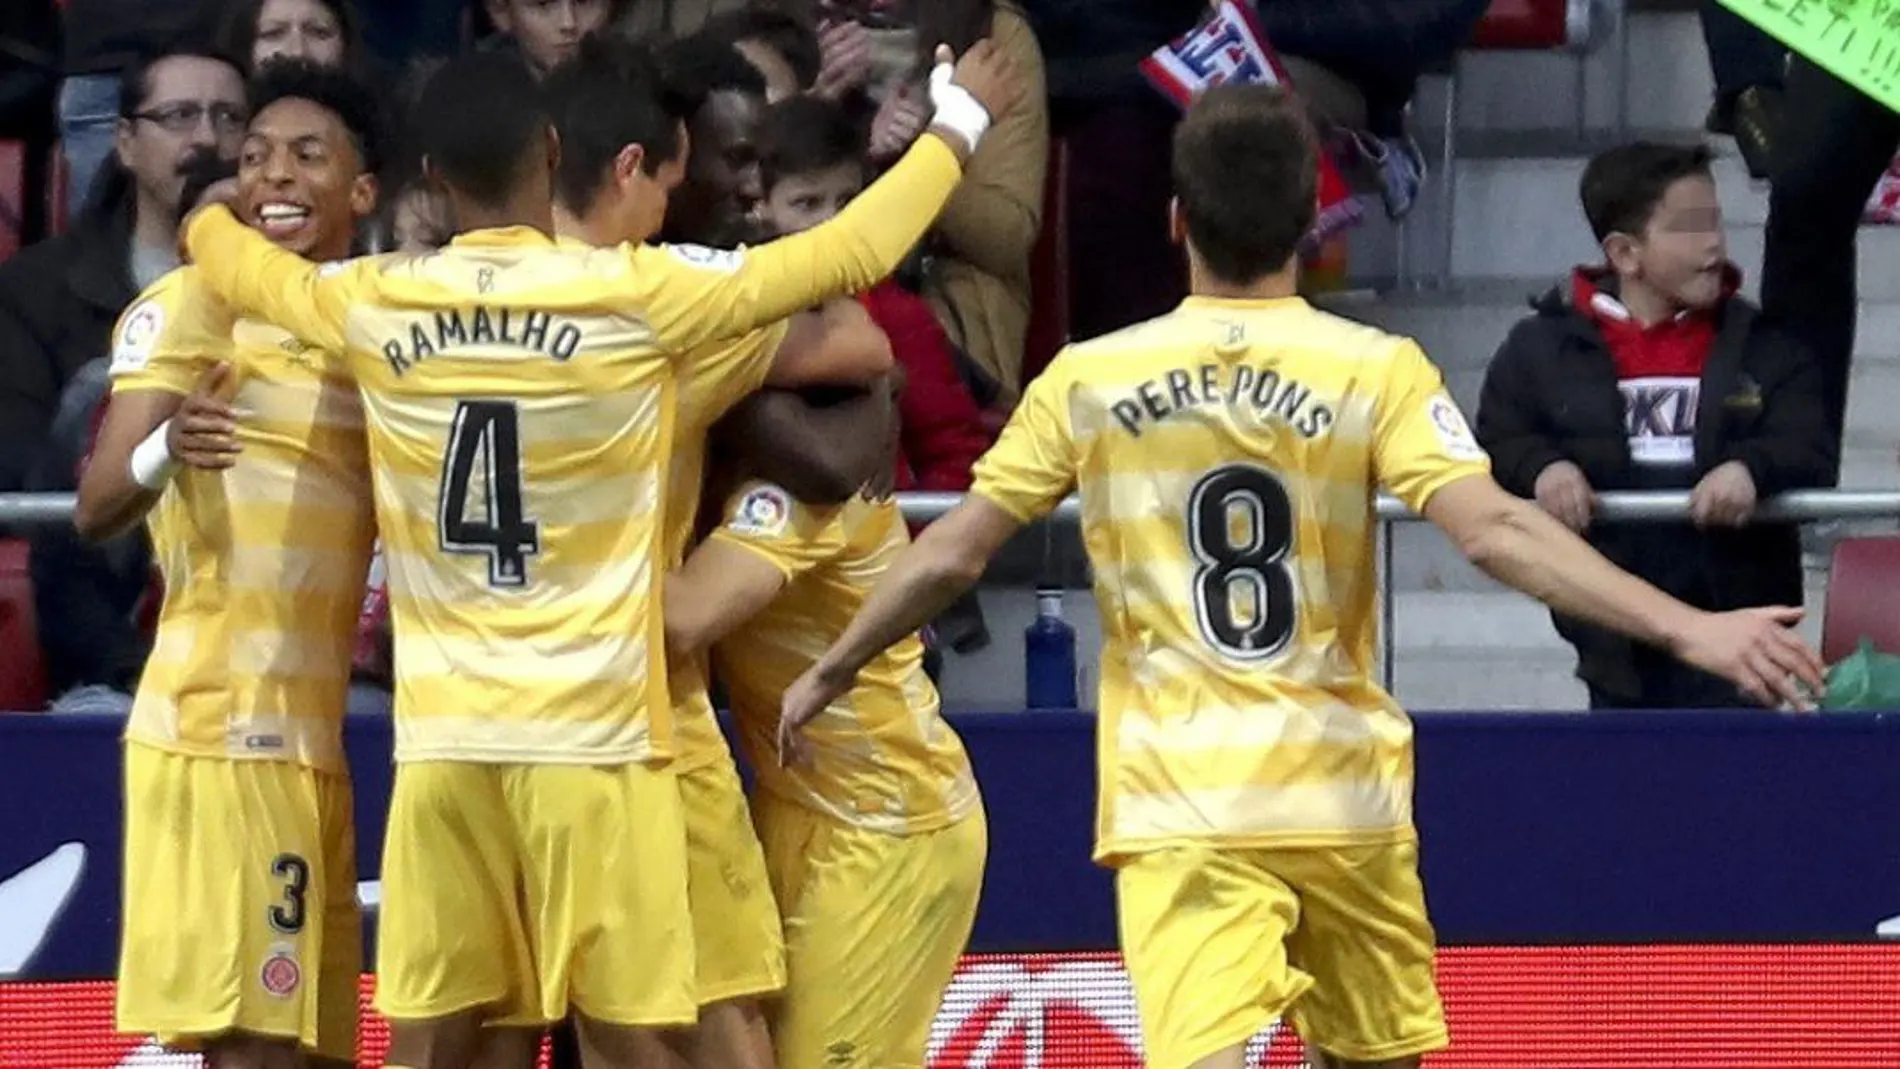 Los jugadores del Girona celebran el gol marcado por su compañero, Cristian Portugués, ante el Atlético de Madrid. EFE/Ballesteros